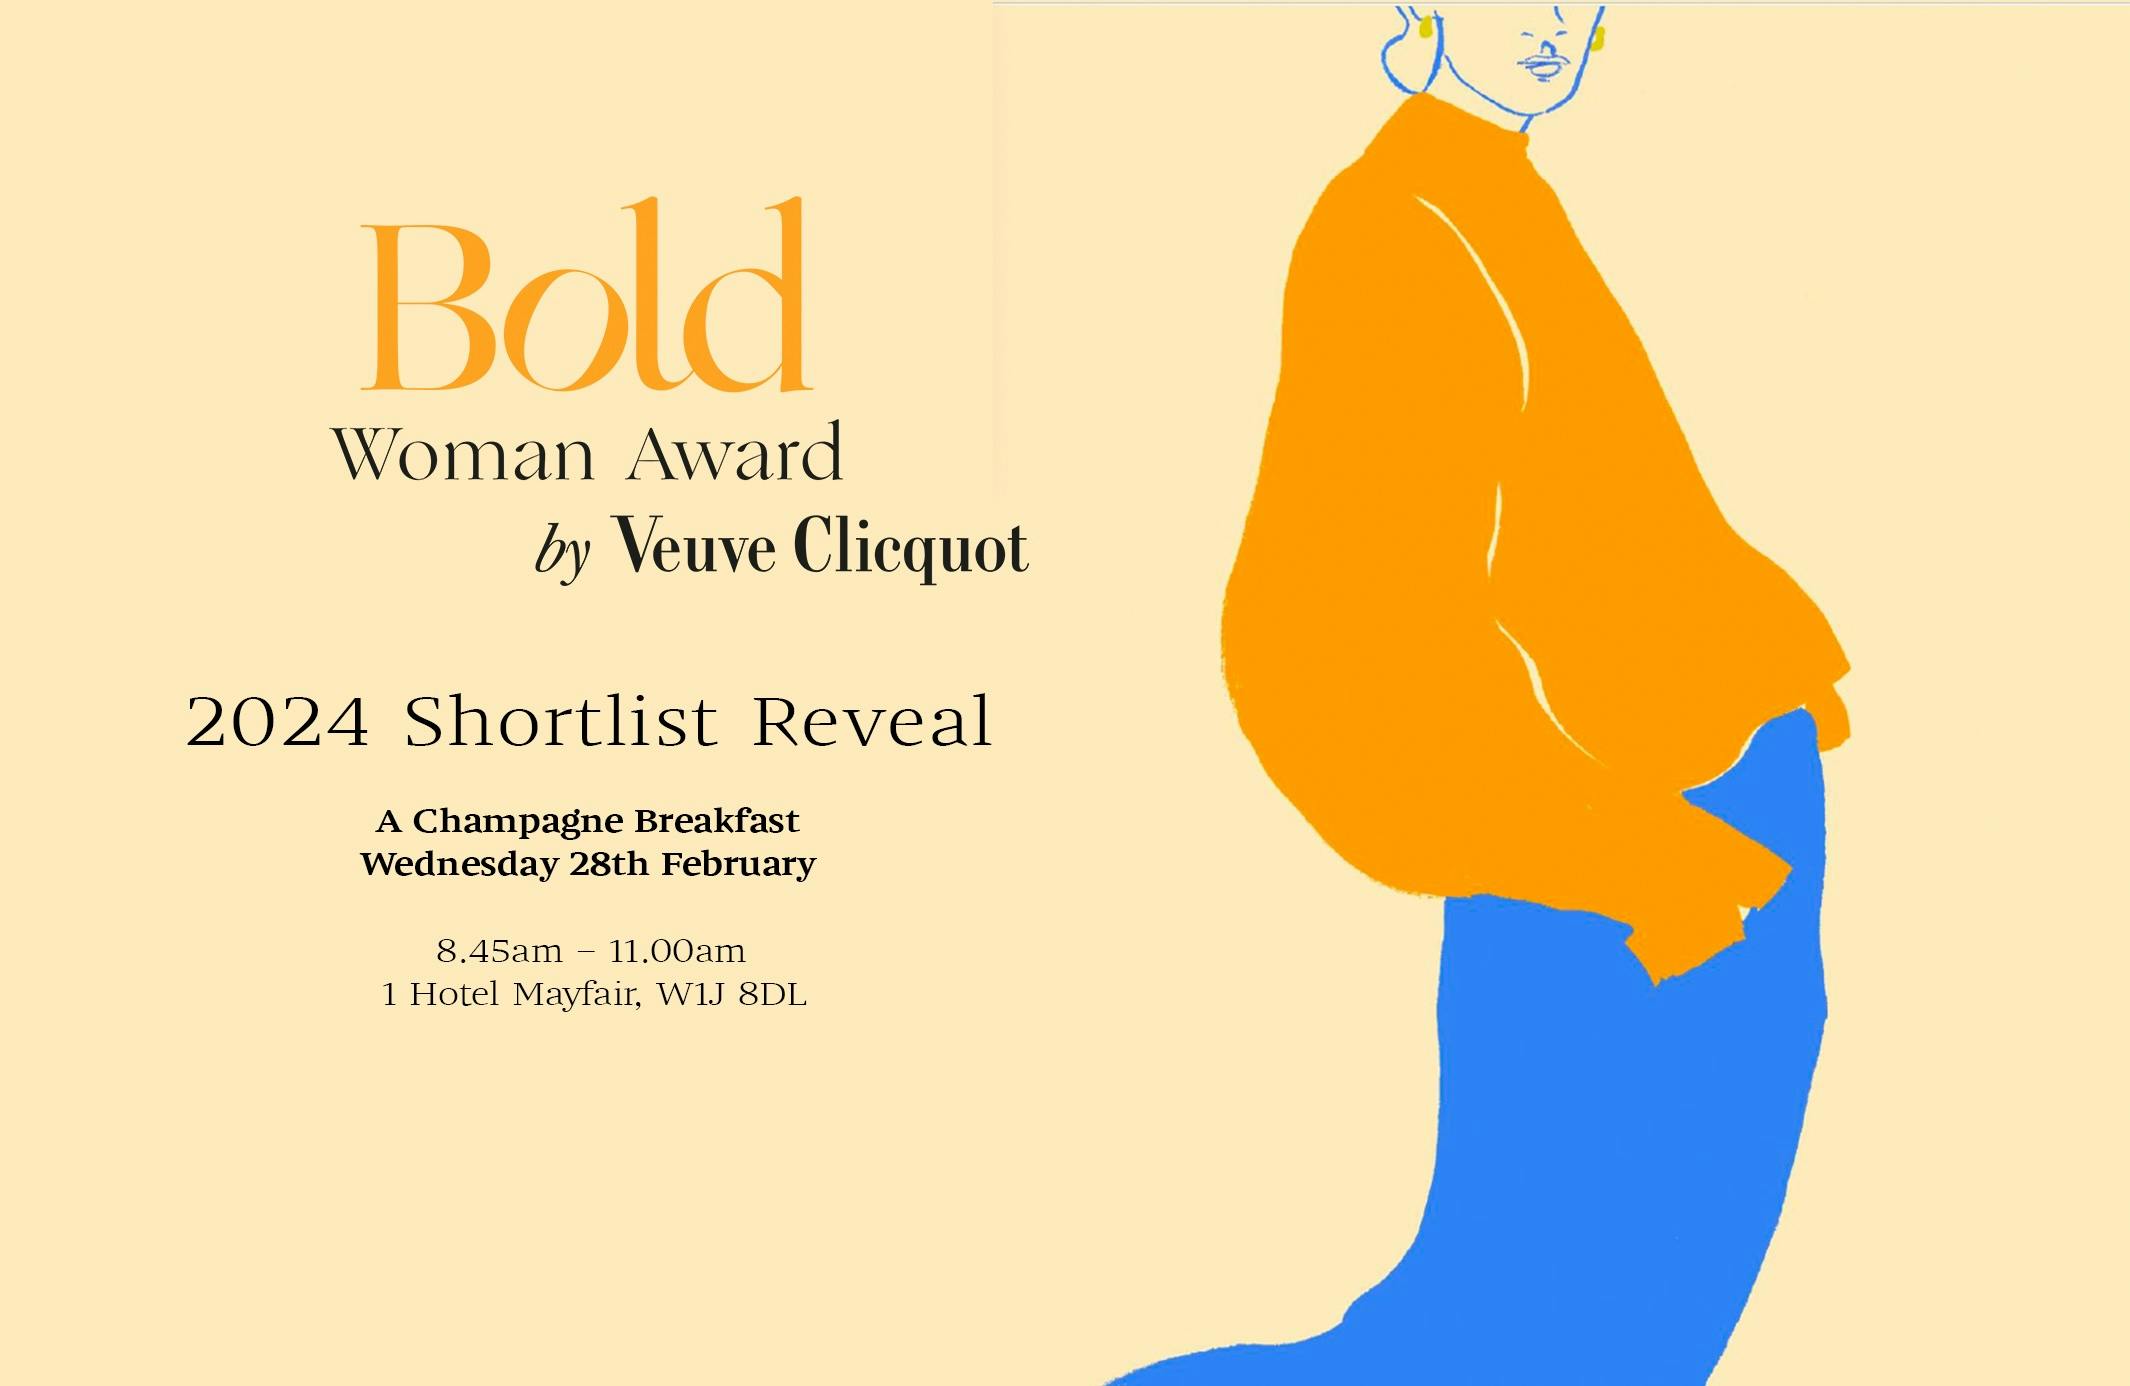 Invitation to the Veuve Clicquot Bold Woman Award announcement